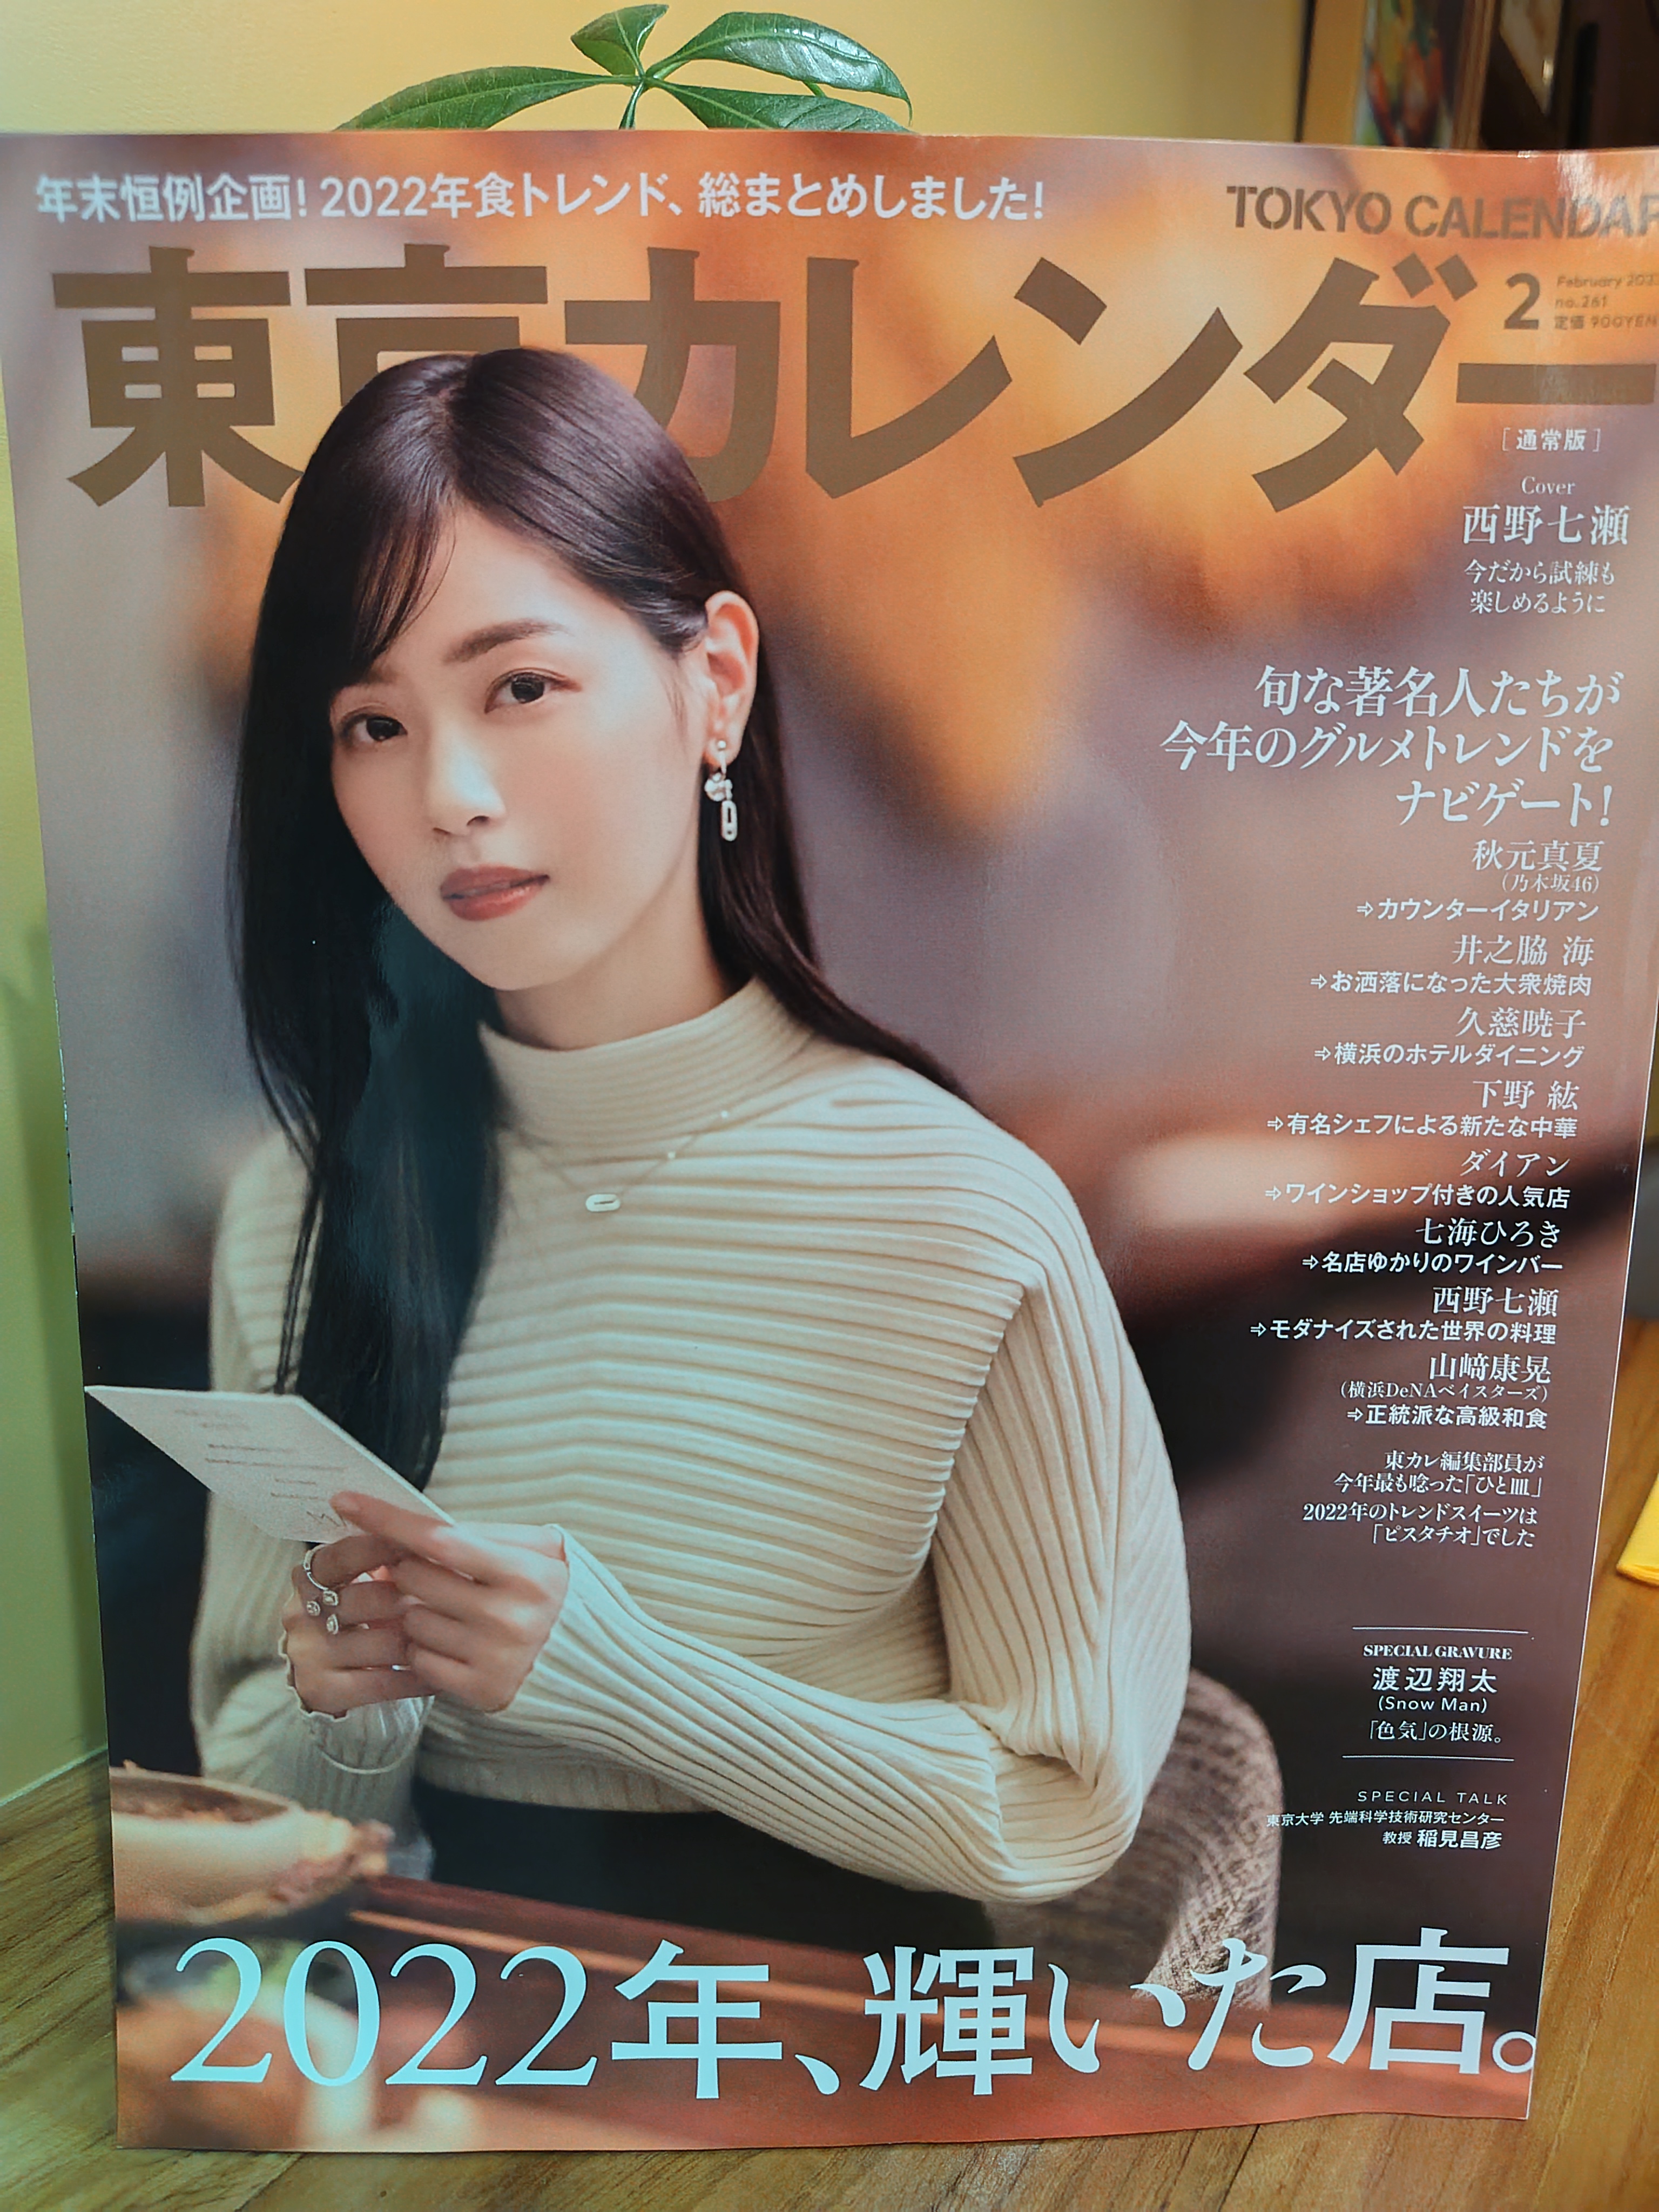 12月21日発売の『東京カレンダー』2月号に掲載されました